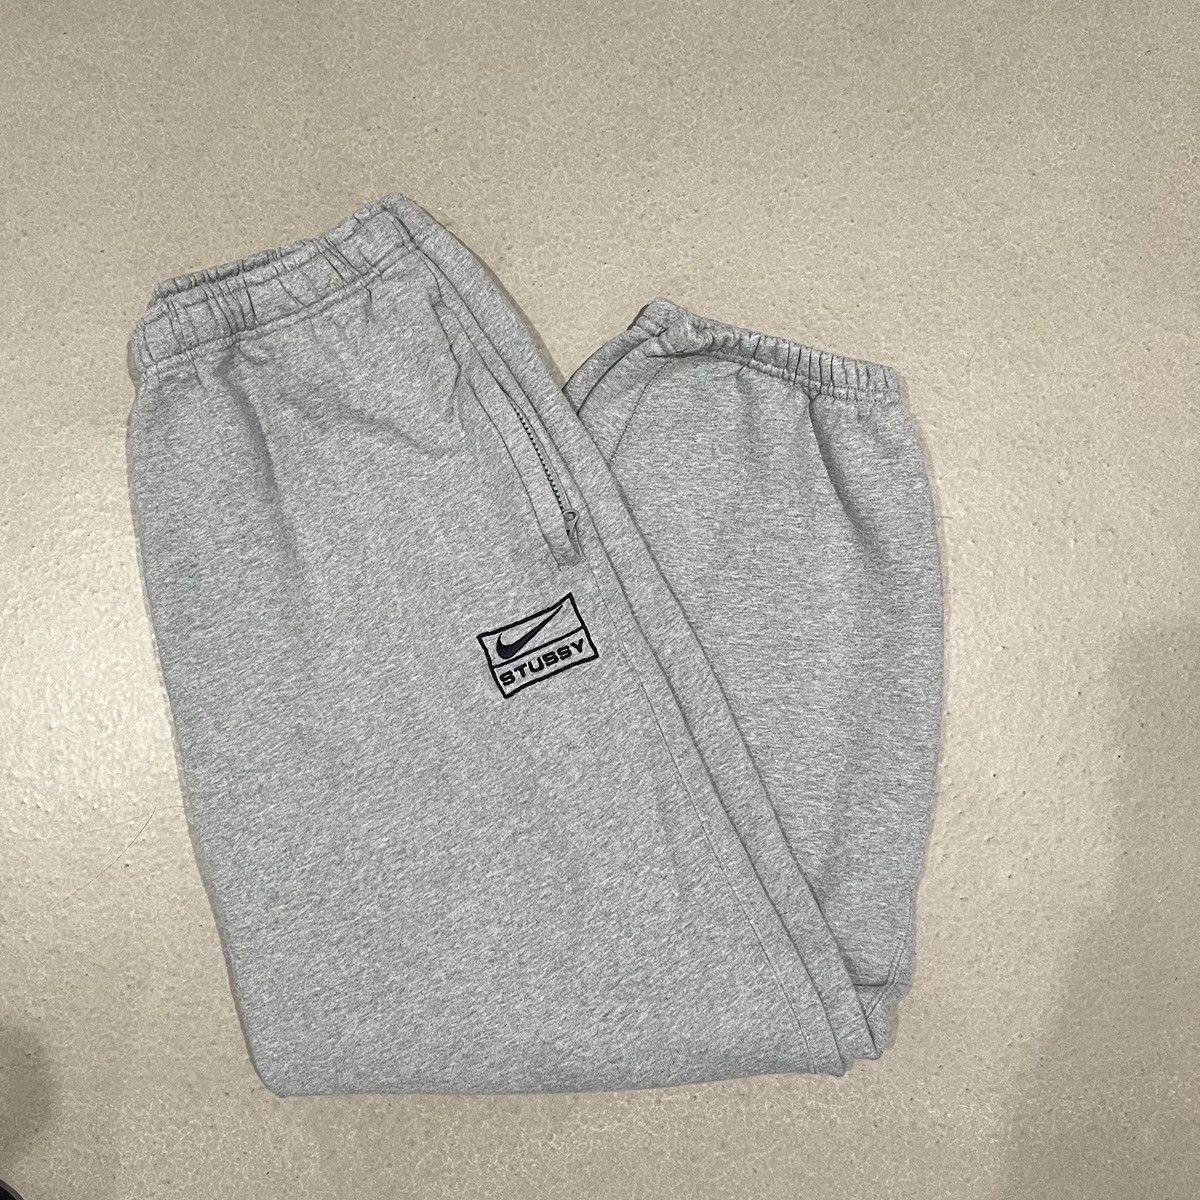 Buy Nike x Stussy Sweatpants 'Grey' - DJ9490 063